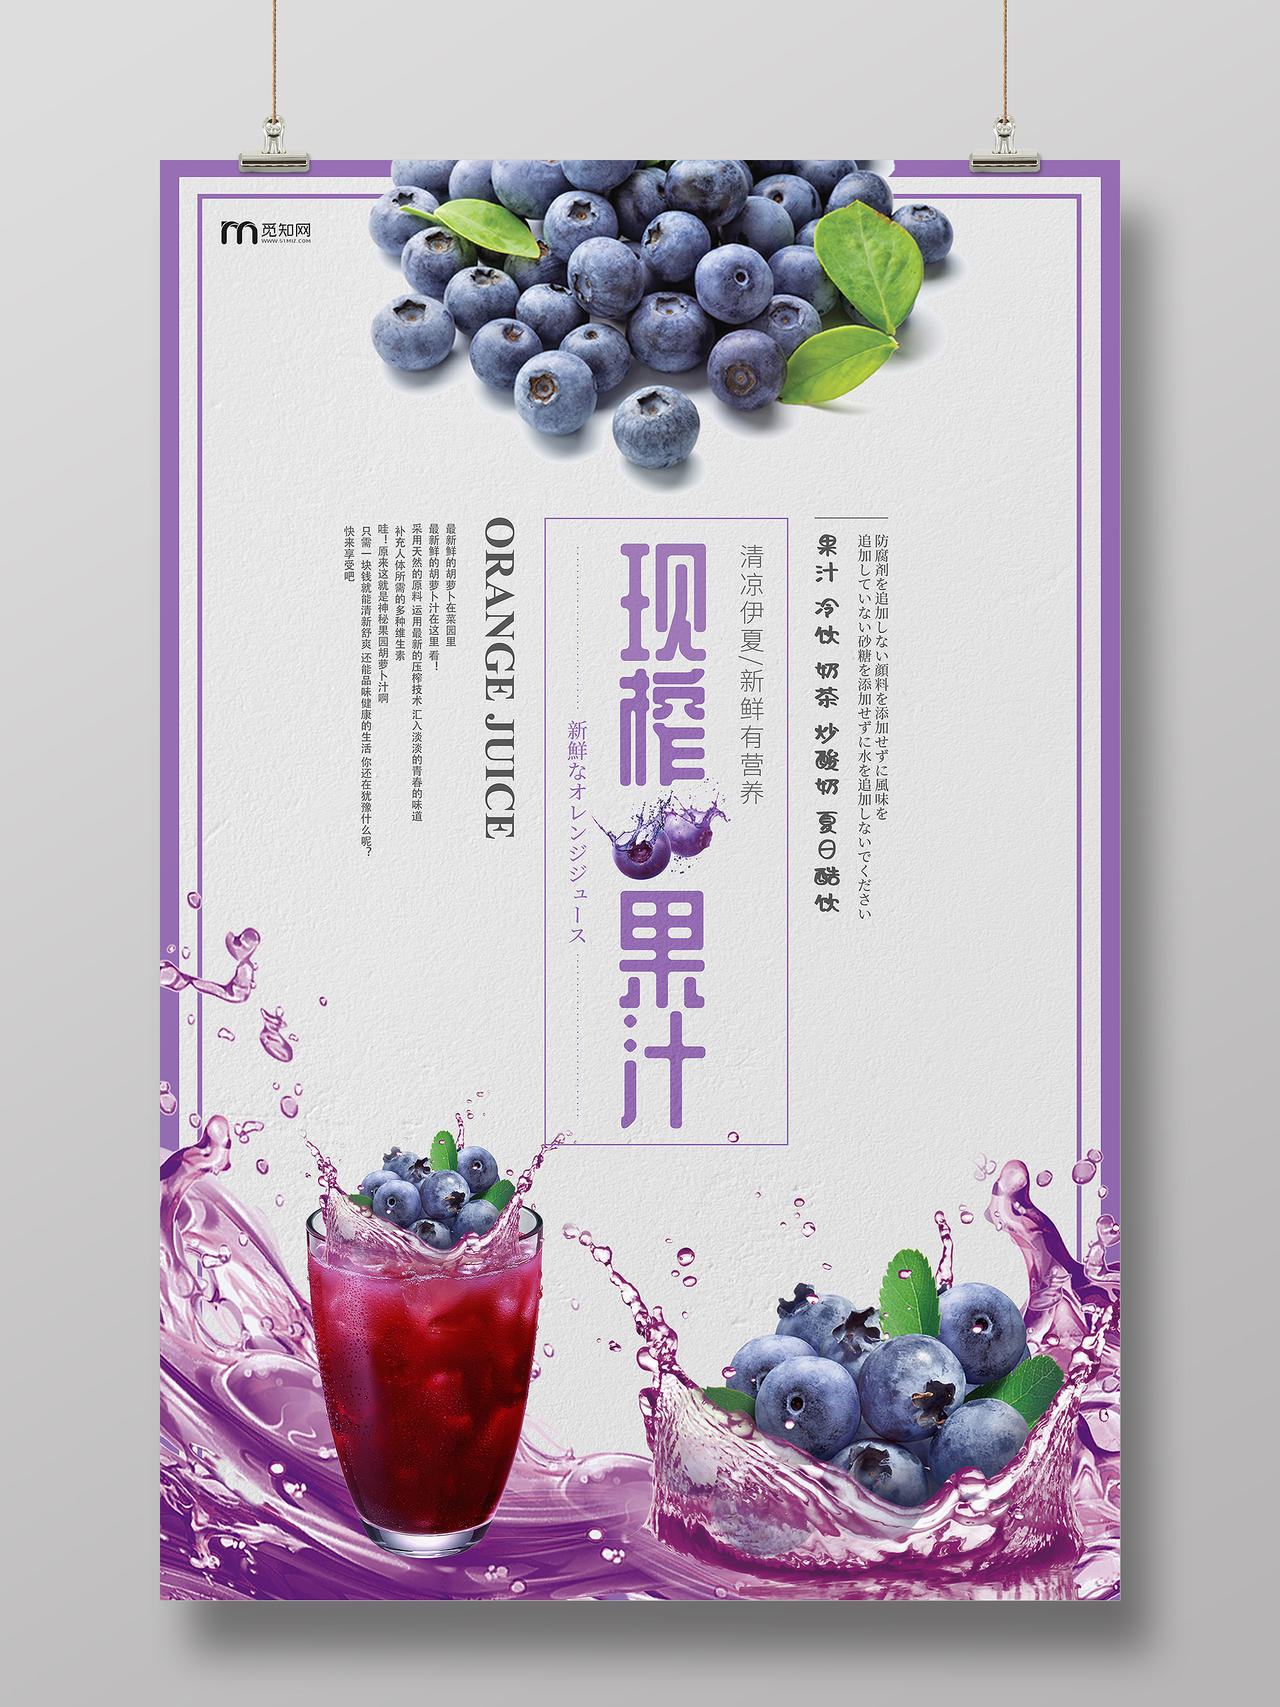 蓝莓汁鲜榨果汁新品宣传海报现榨果汁